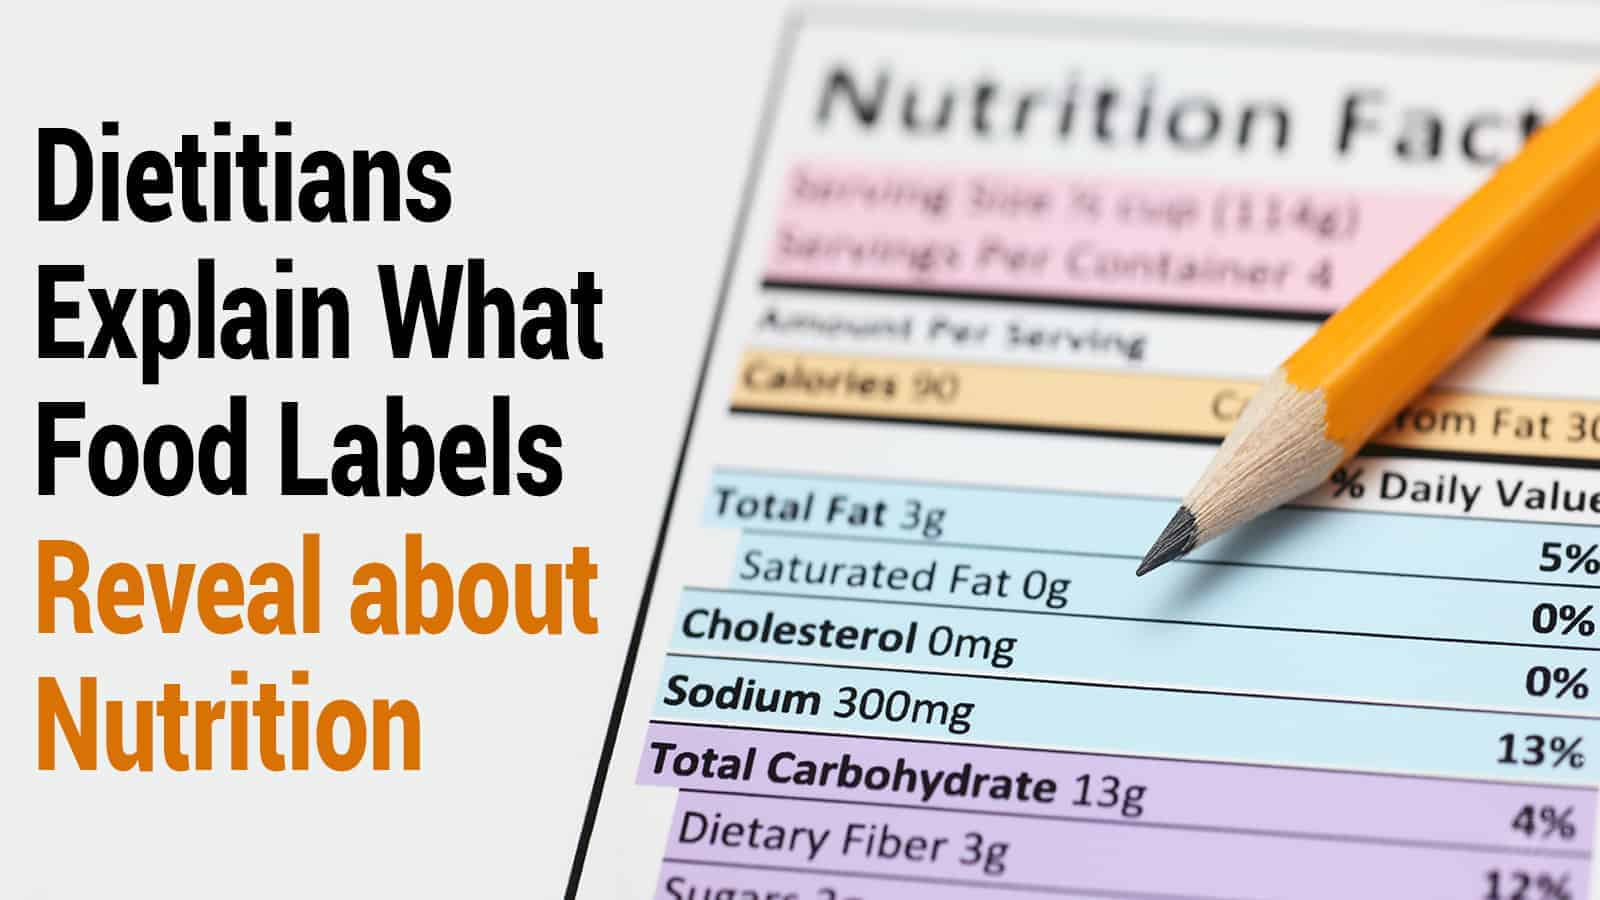 Dietitians Explain What Food Labels Reveal about Nutrition